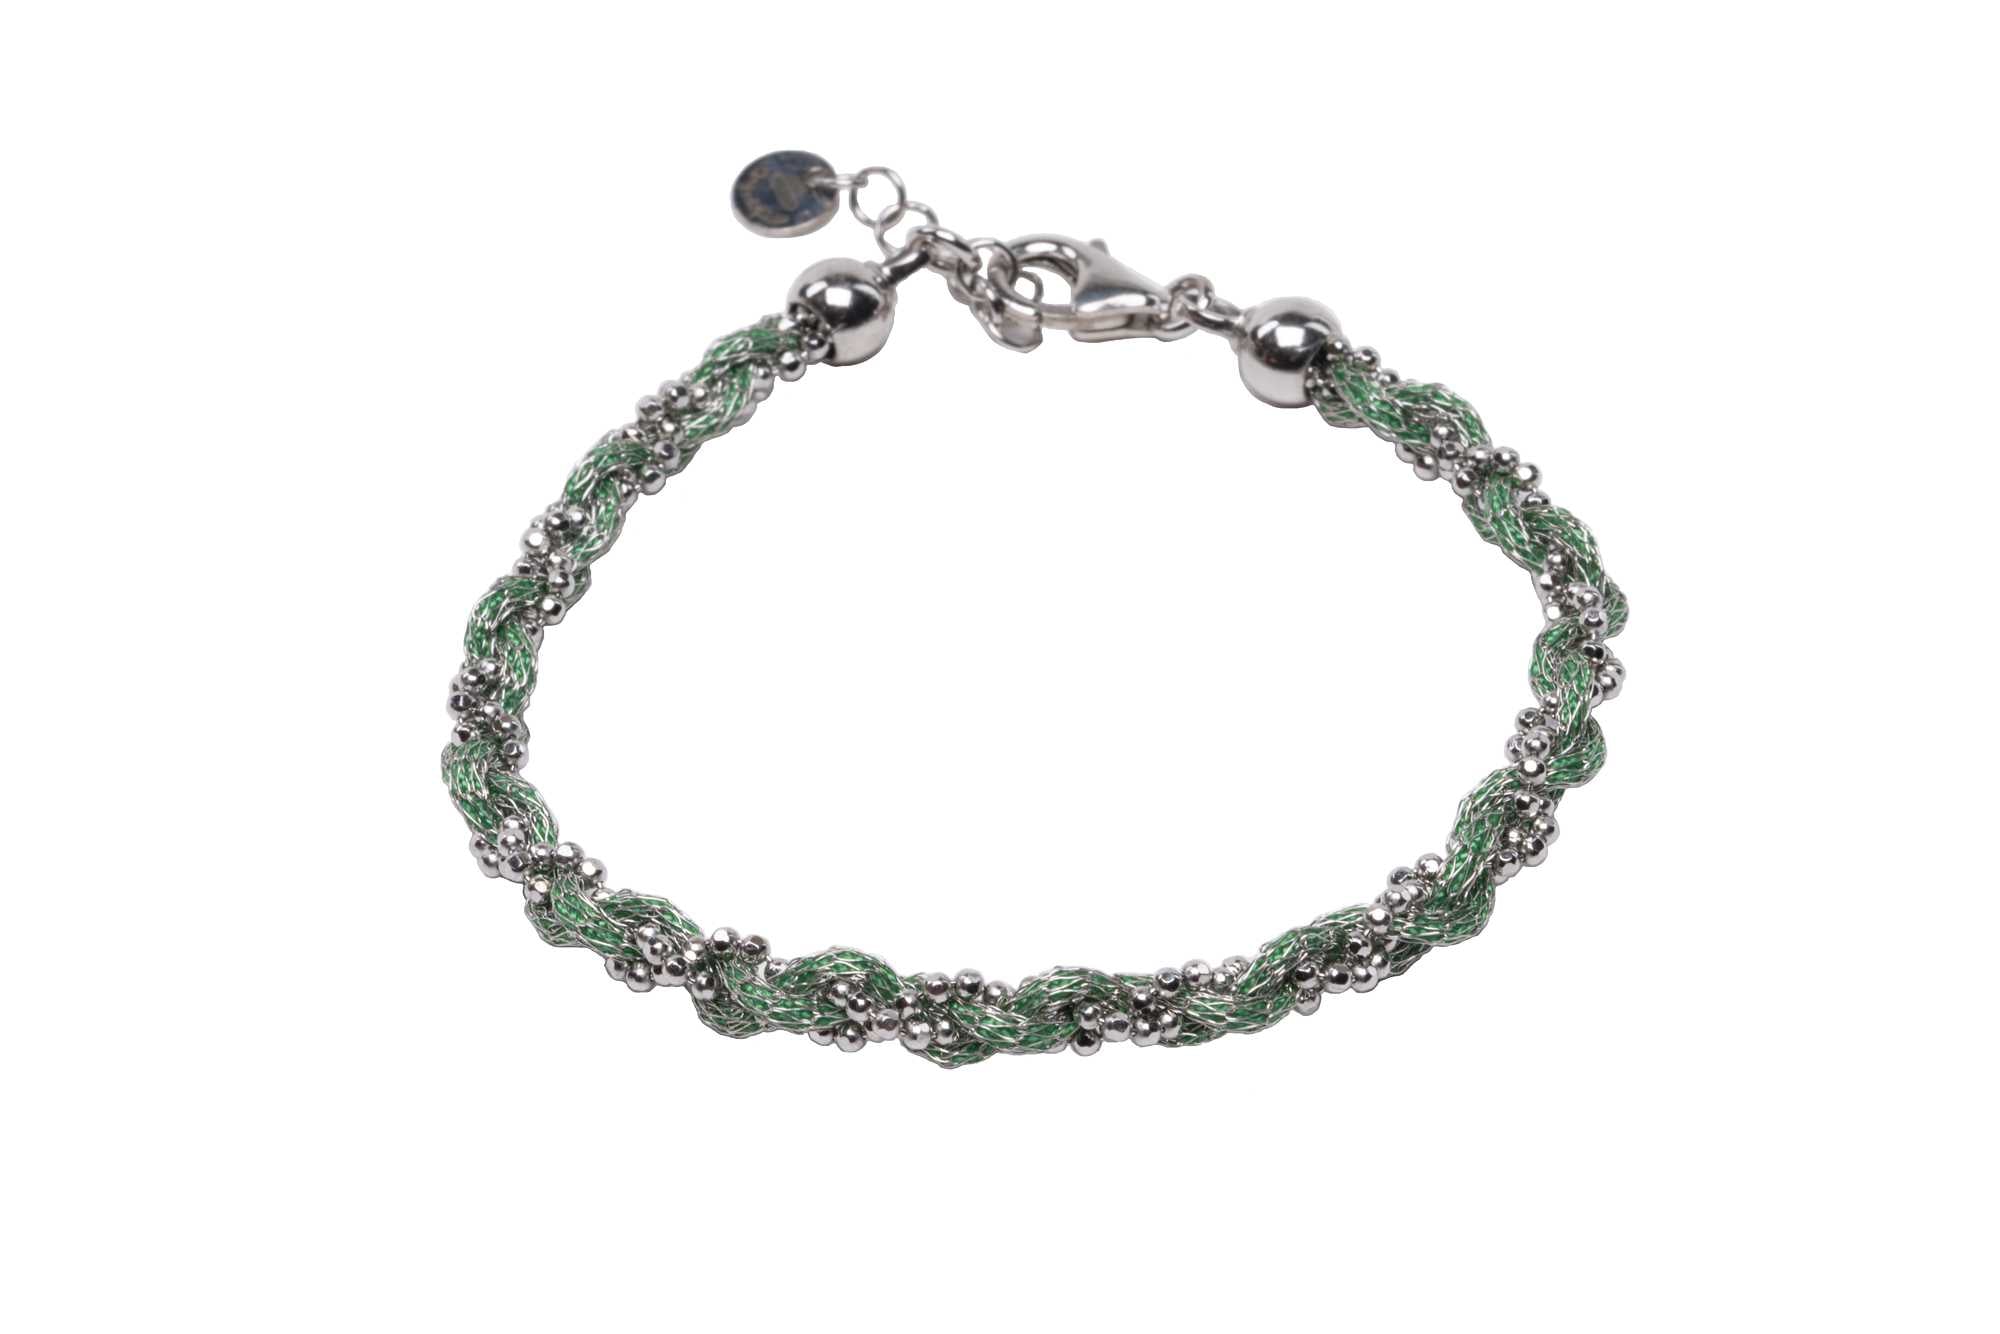 Bracciale-intrecciato-colorato-verde-Argentofilato-in-argento-925